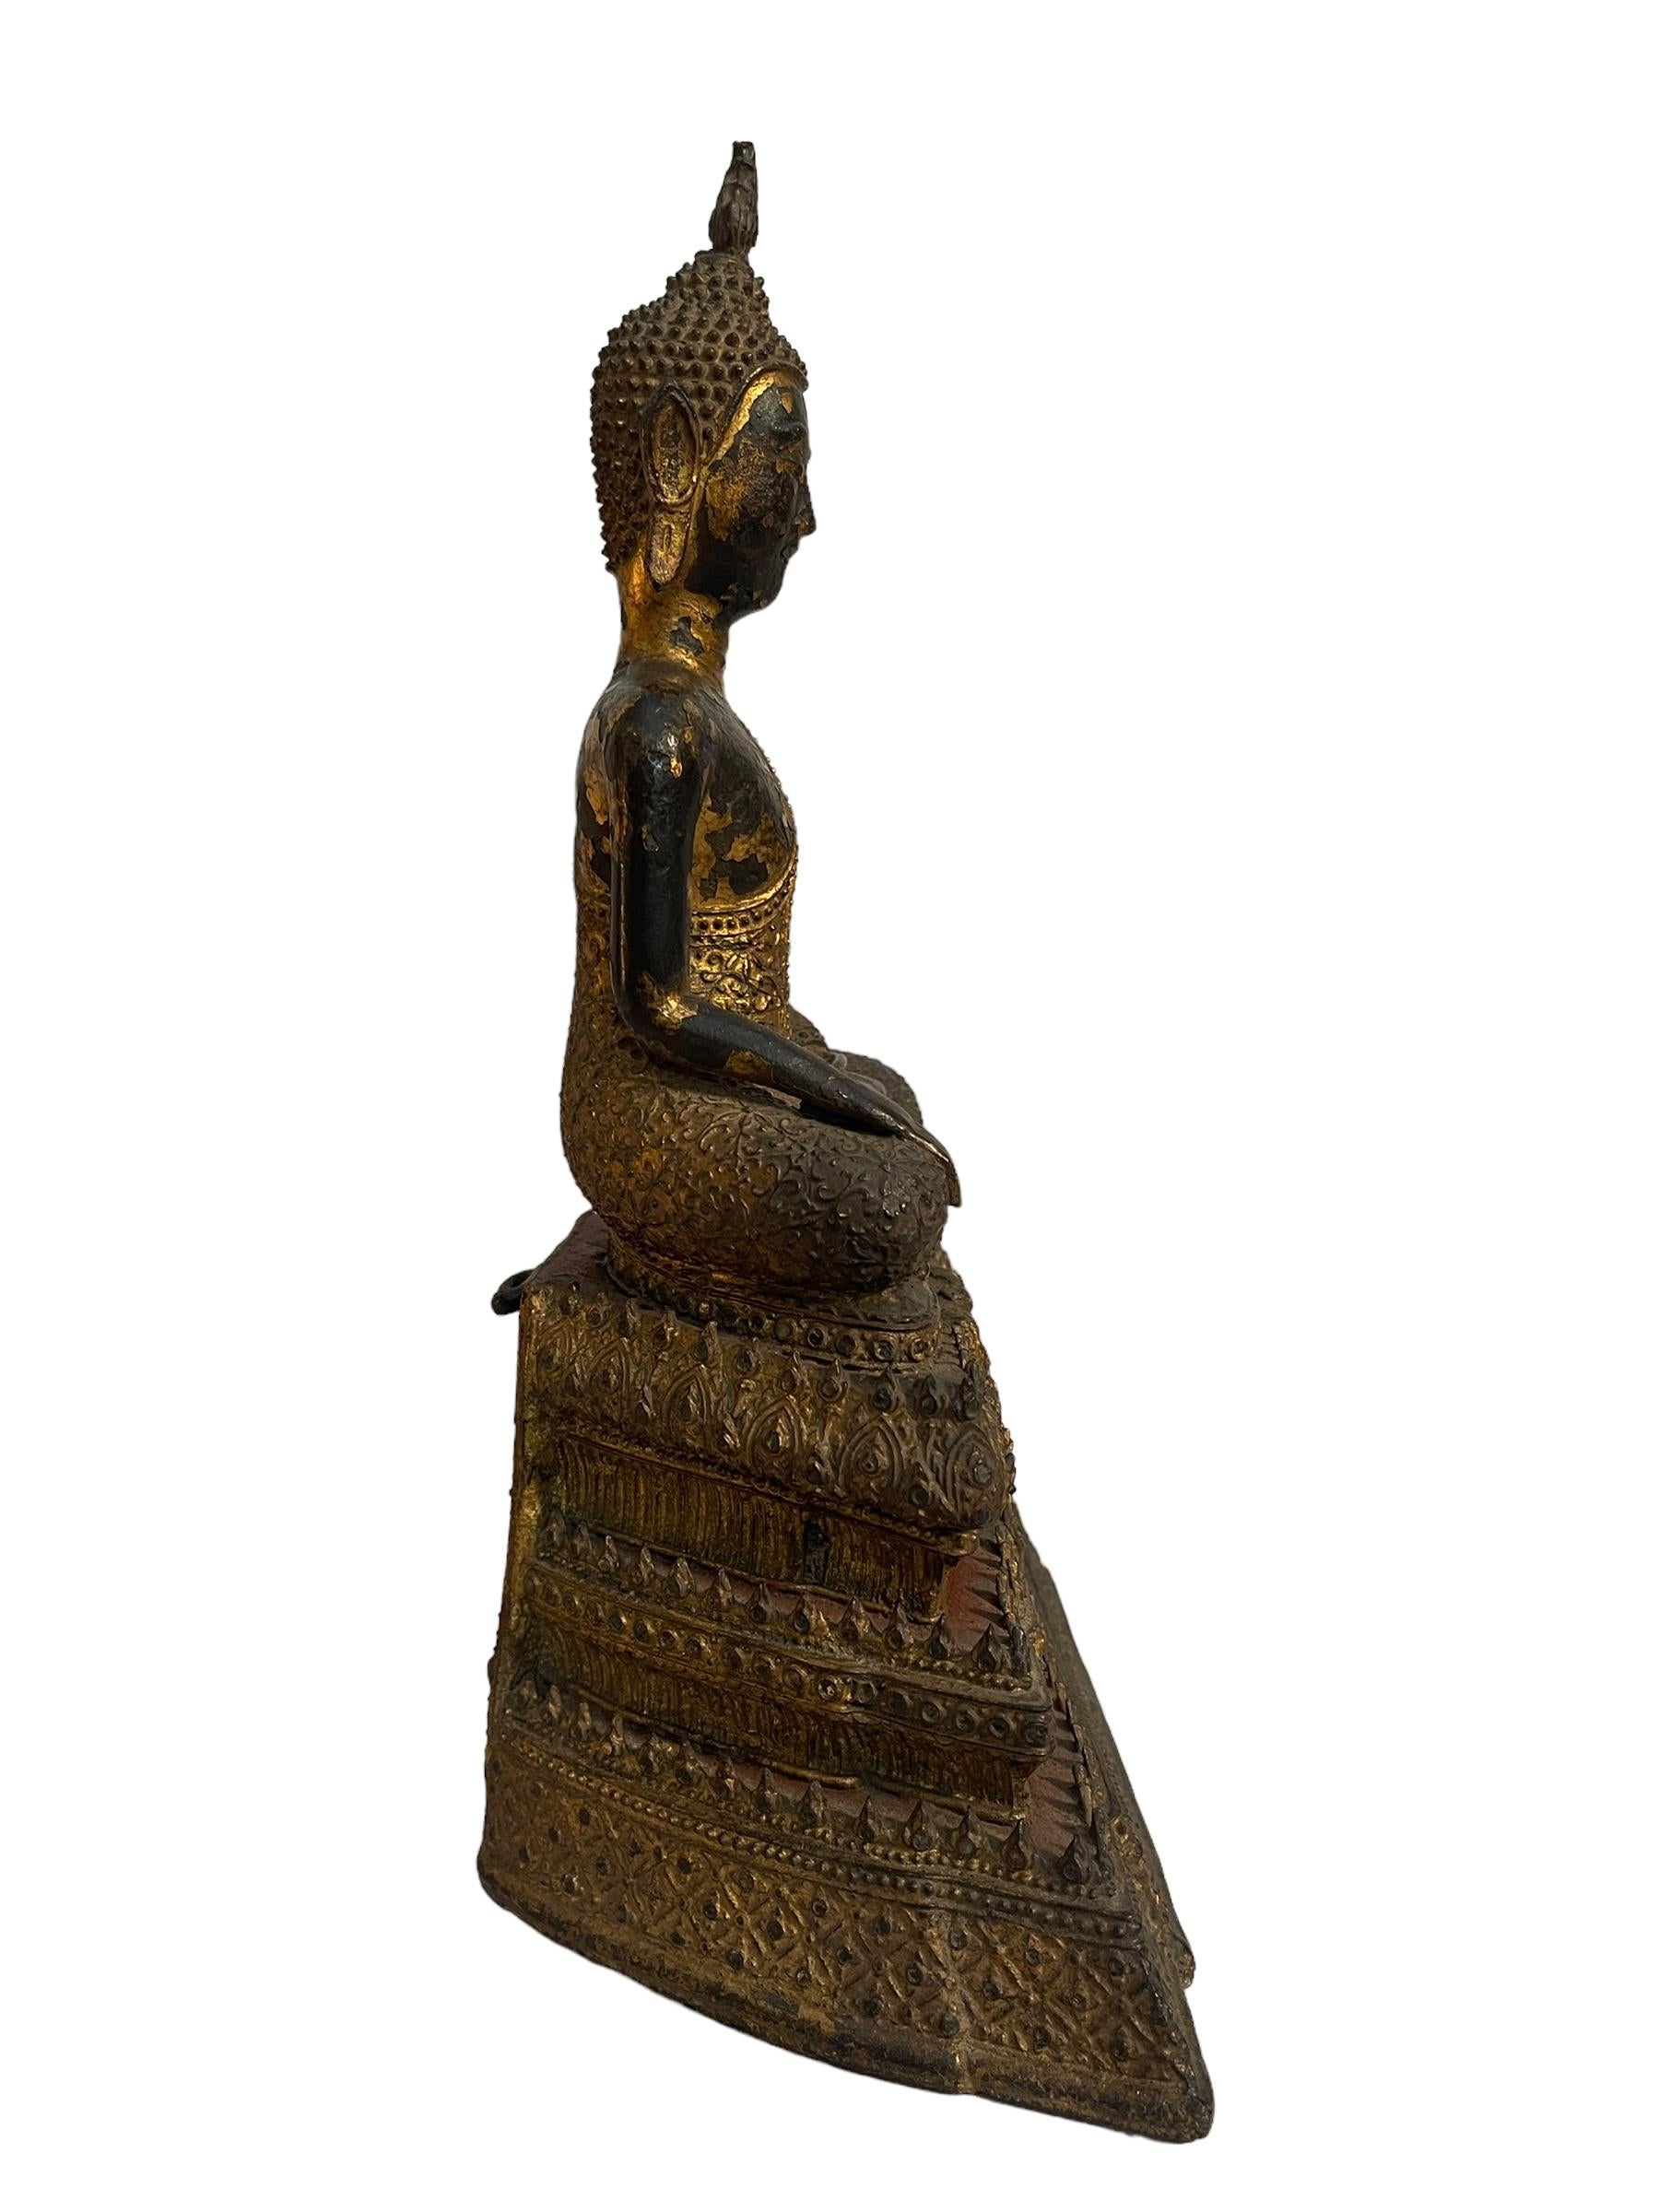 Élégante statue de Bouddha en méditation, originaire d'Asie du Sud-Est, datant de la fin des années 1800 et du début des années 1900, elle est réalisée avec une structure interne qui sert de base à l'œuvre dans un mélange semblable à de l'argile, et